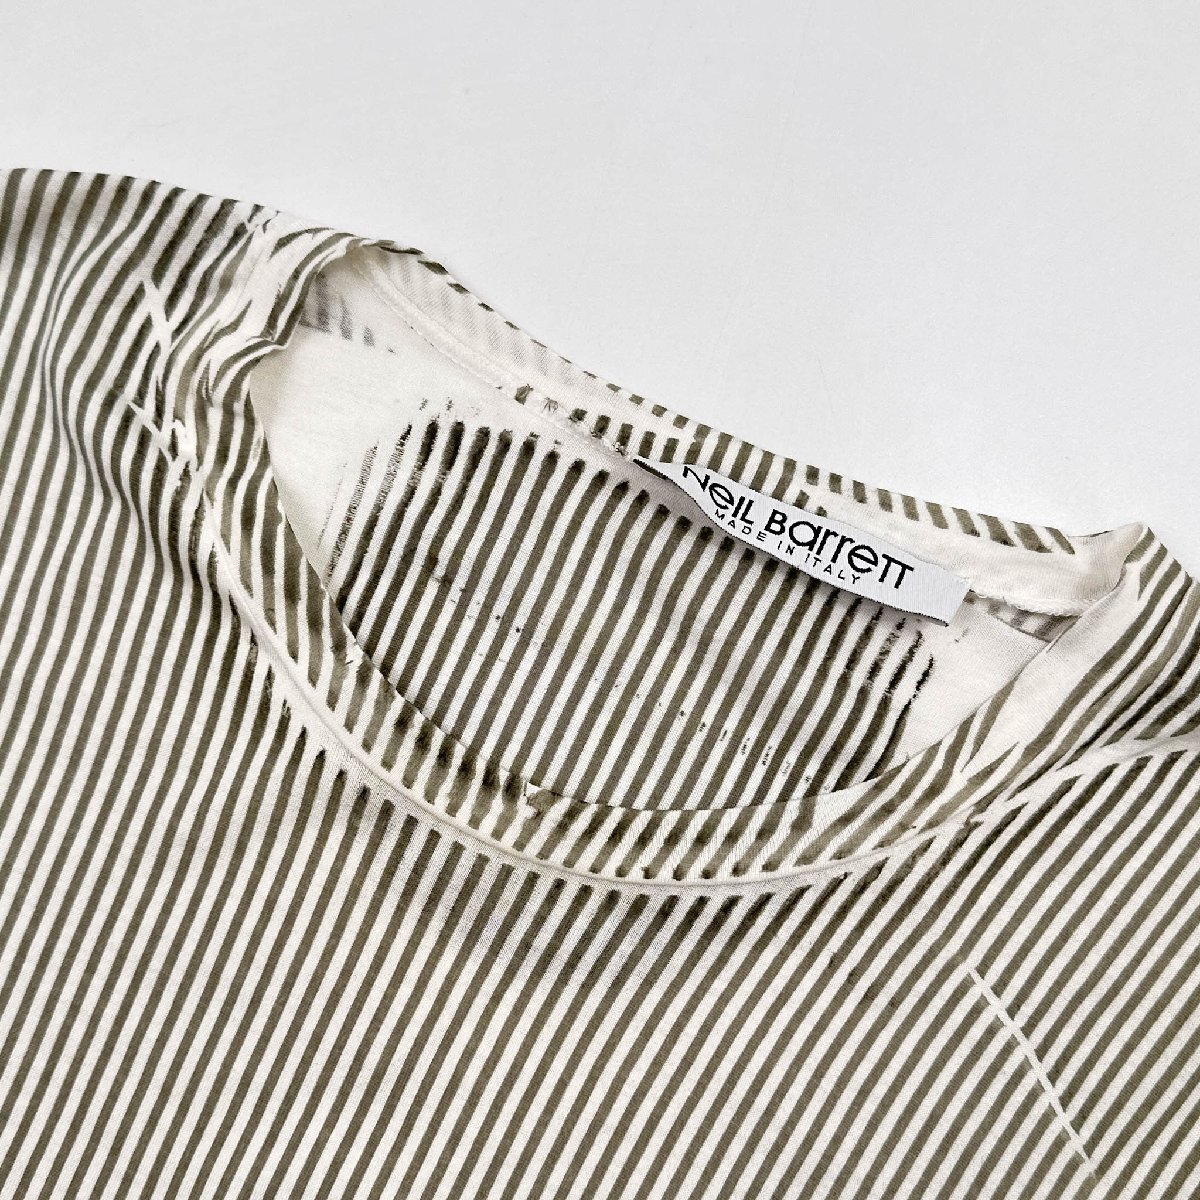 イタリア製◆NEIL BARRETT ニールバレット ストライプ 半袖 Tシャツ カットソー S/薄手/メンズ/サンフレール_画像3